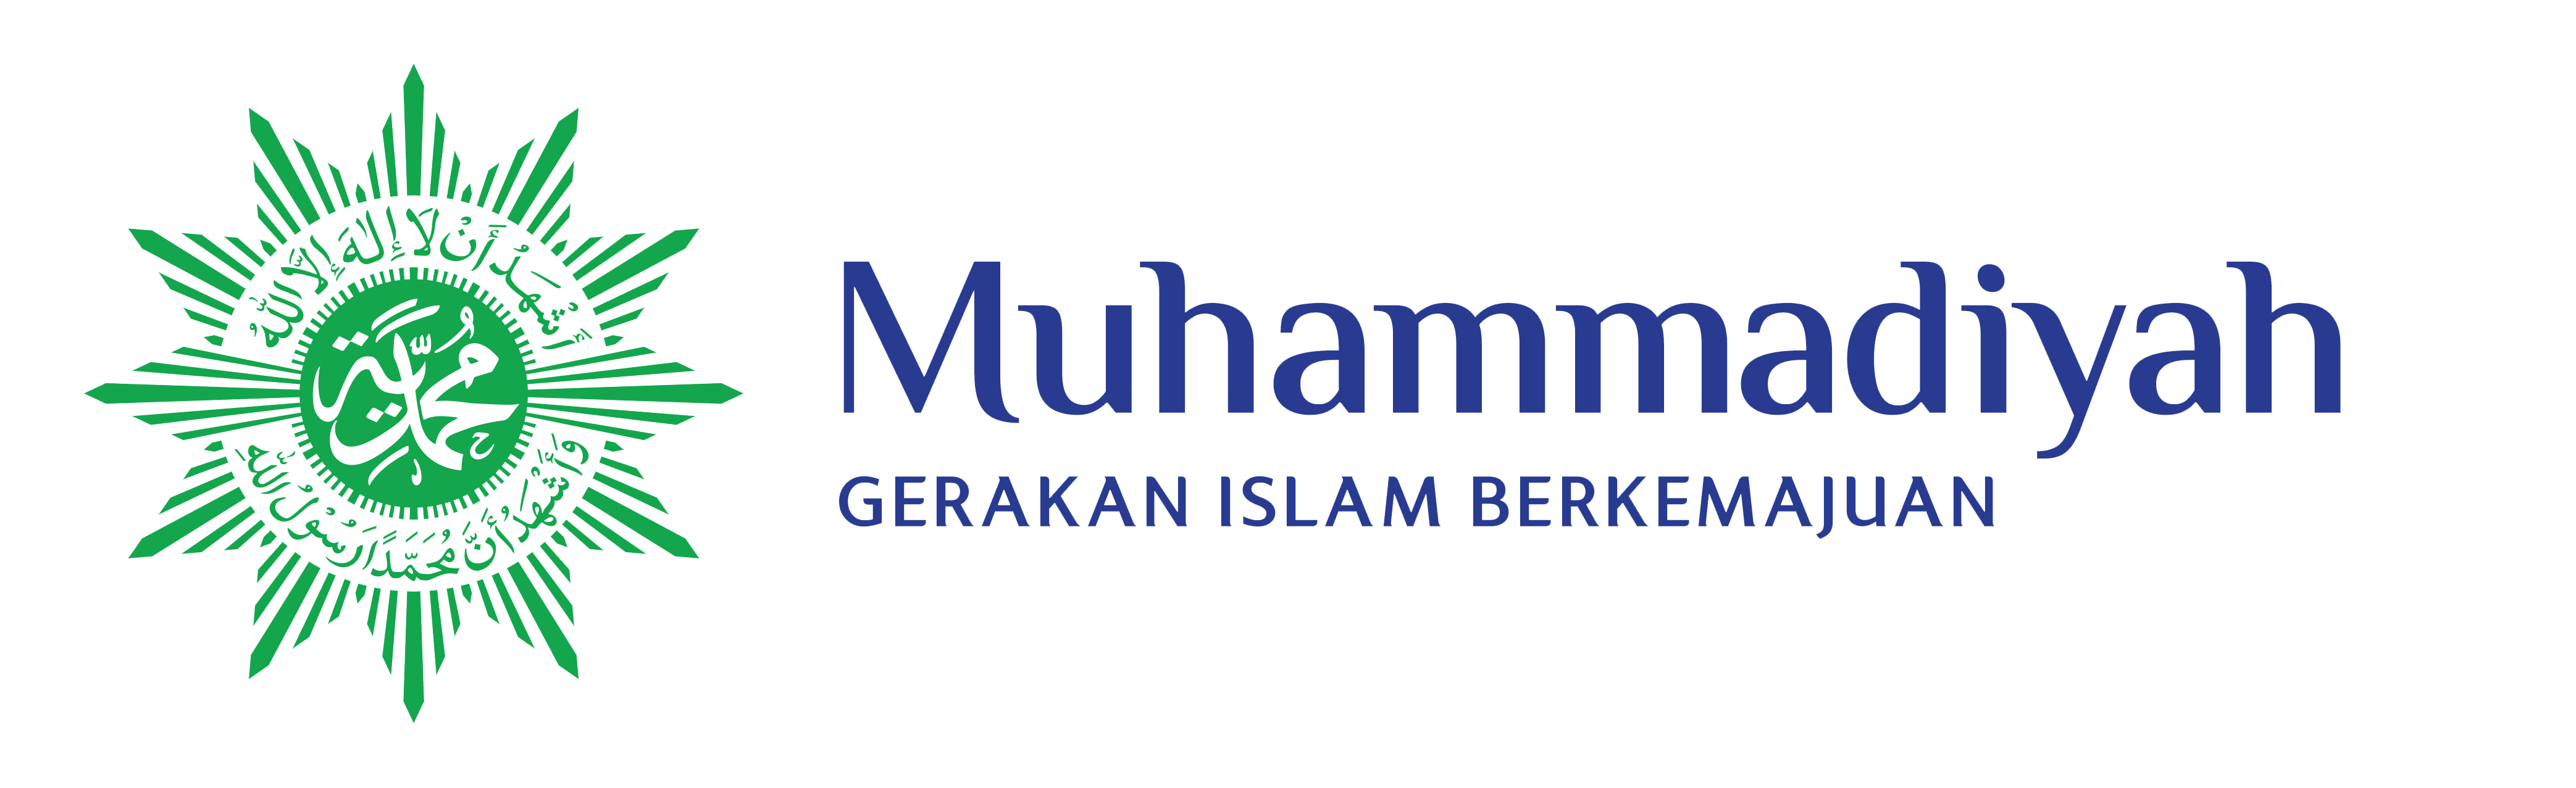 logo muhammadiyah medcom web